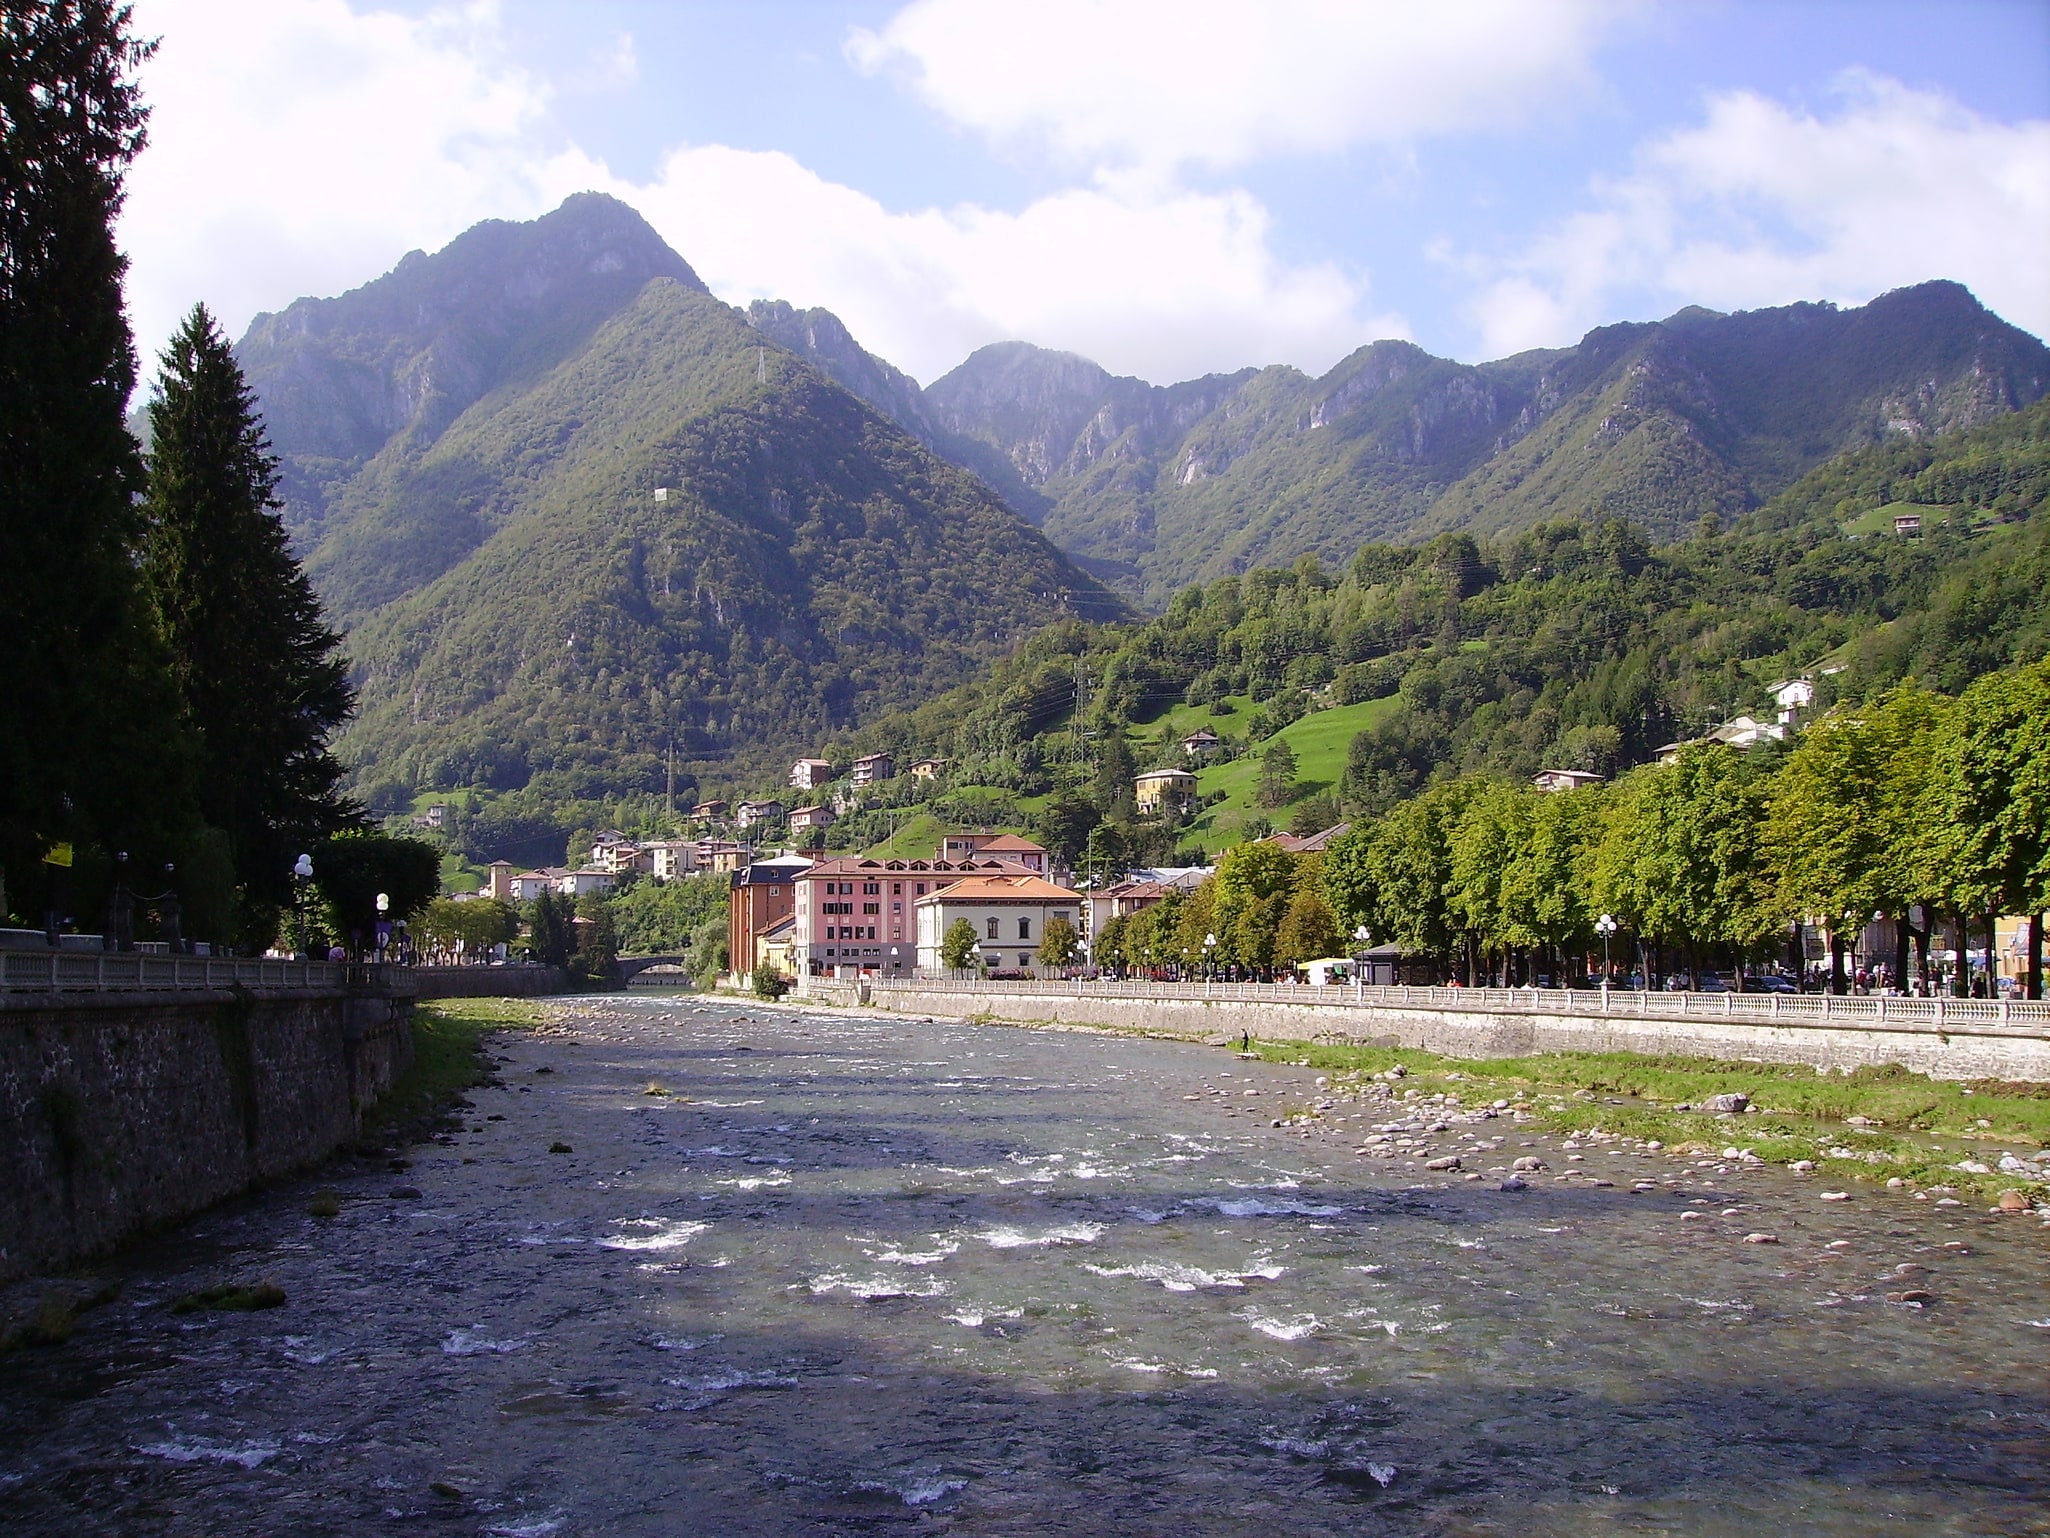 San Pellegrino Terme, Italy